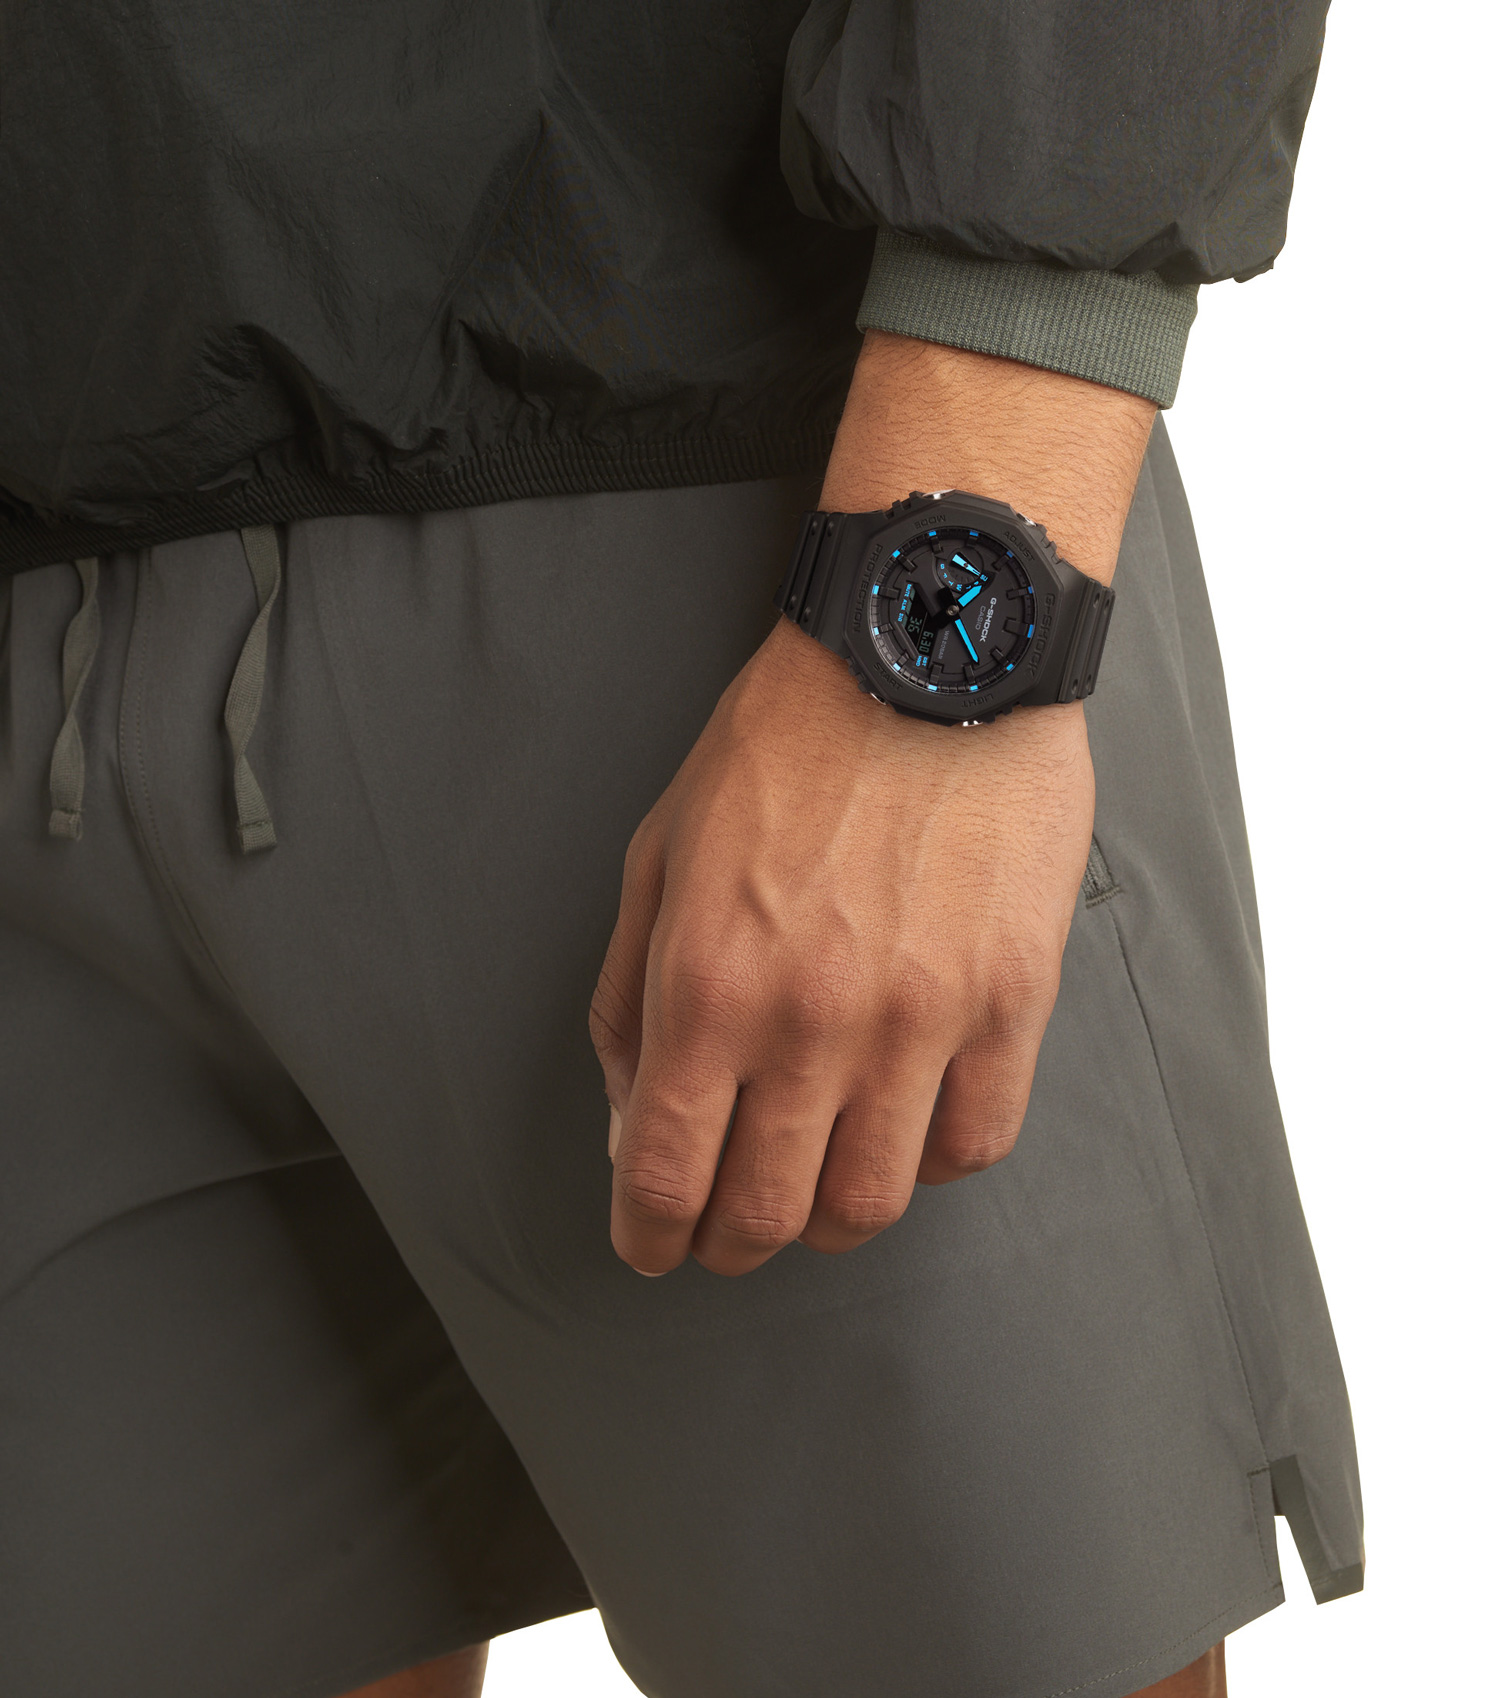 Casio G-Shock Uhr GA-2100-1A2ER Armbanduhr